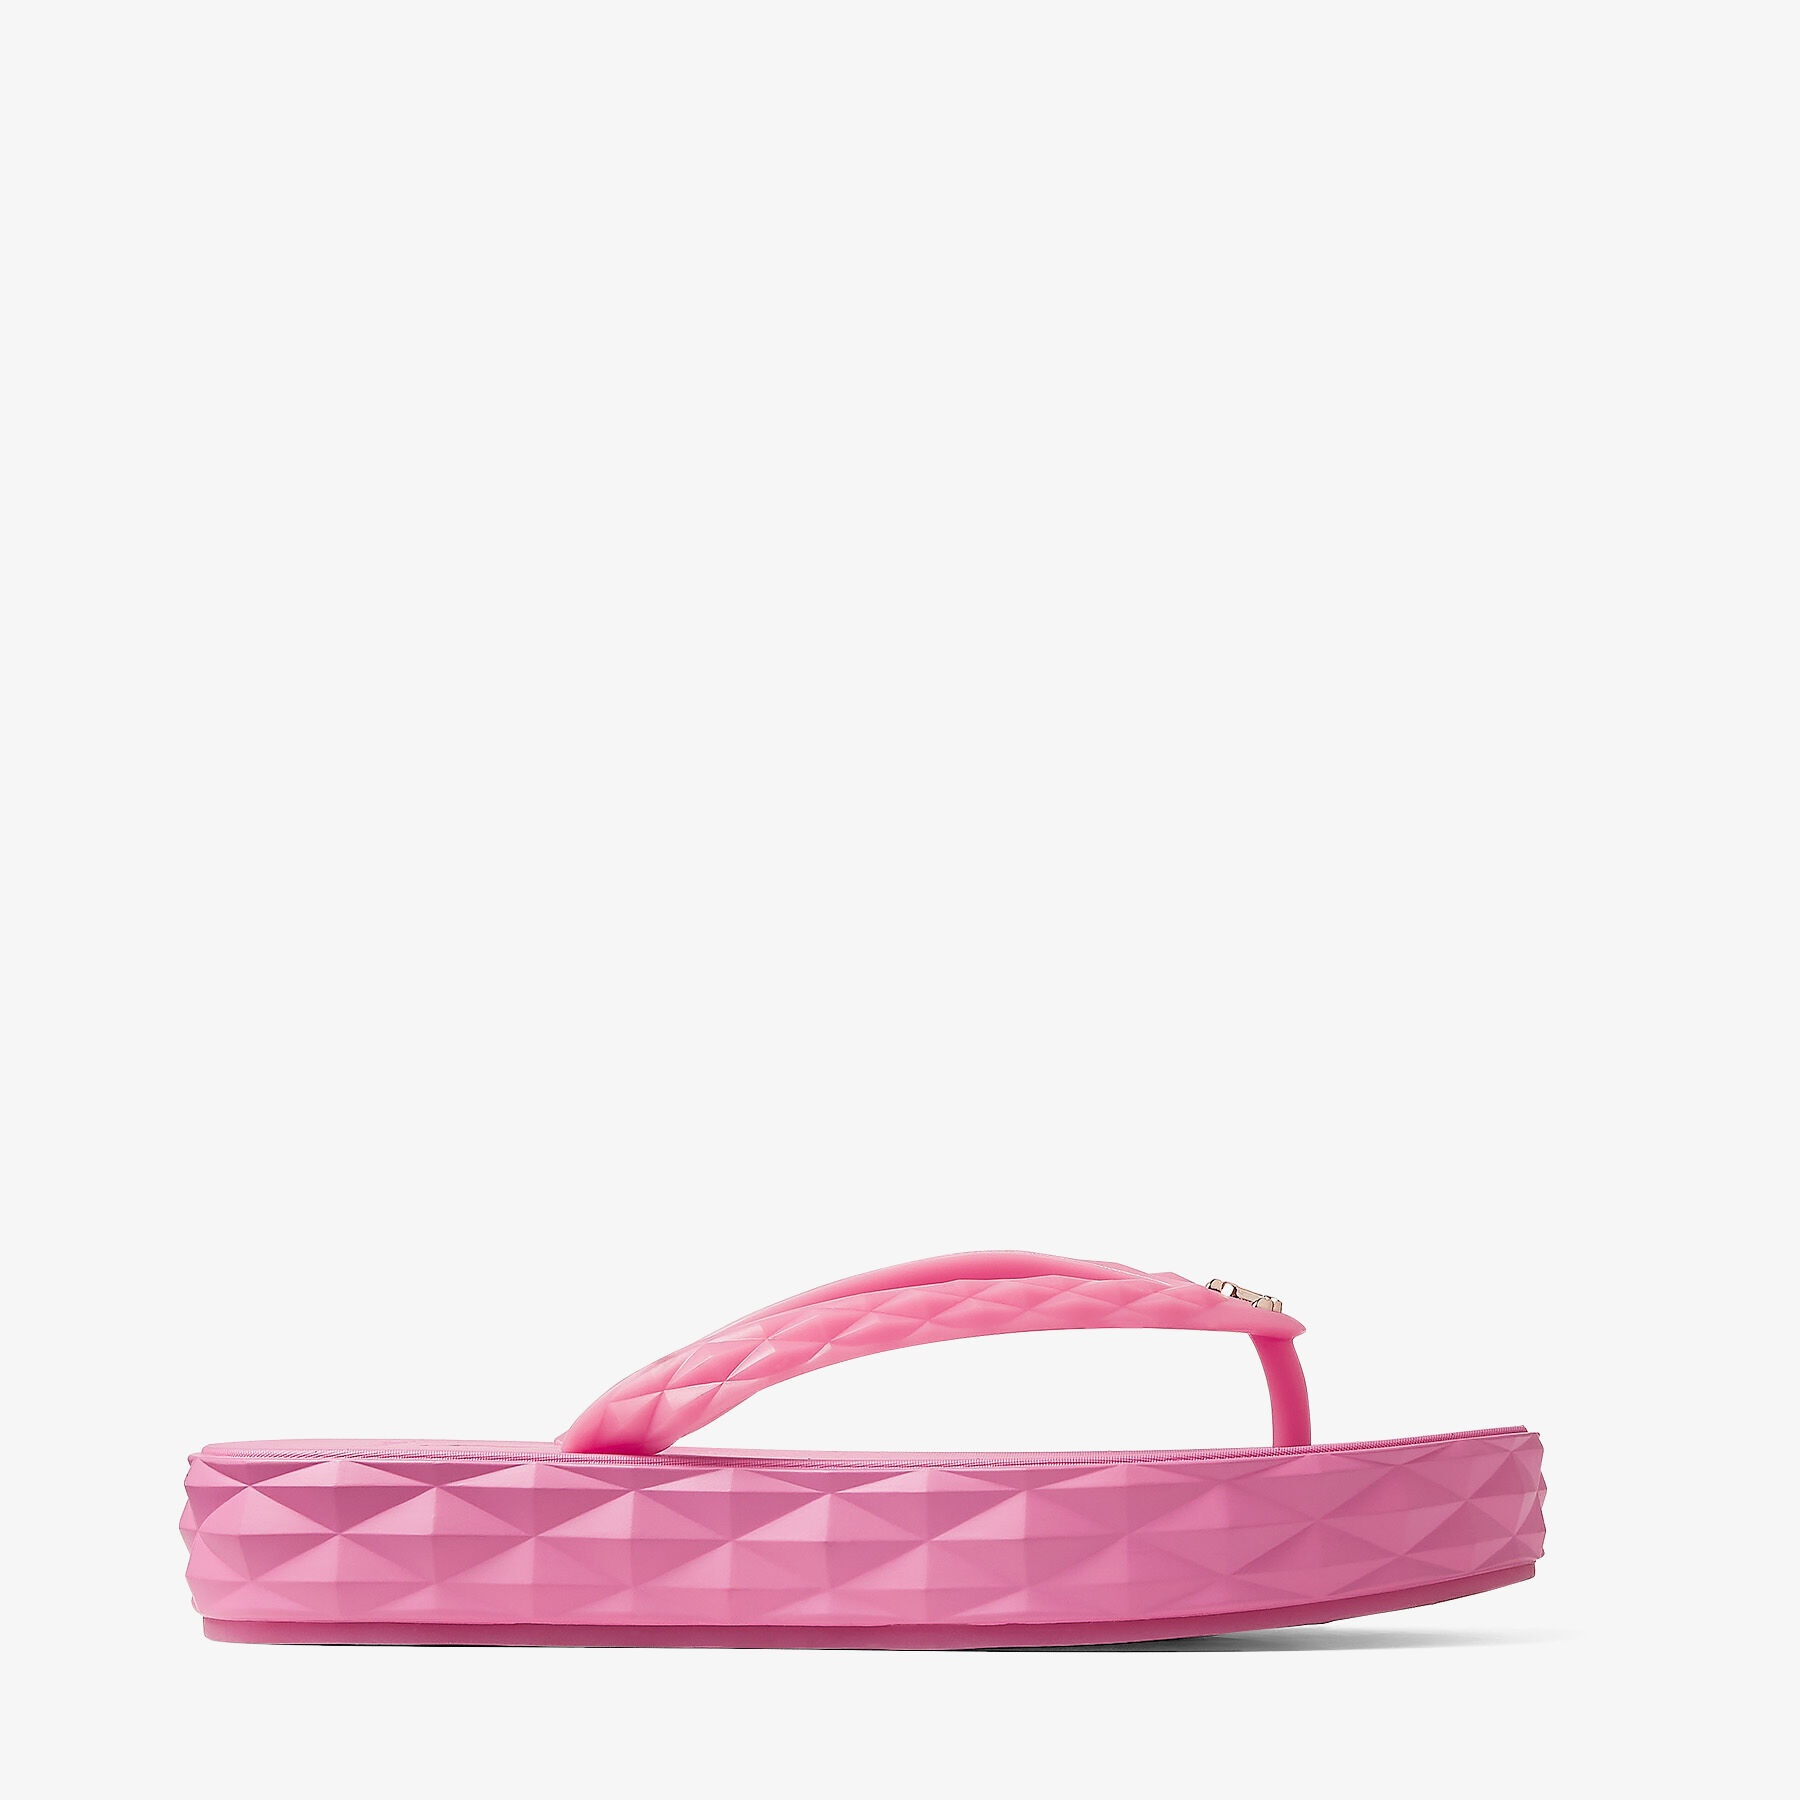 Diamond Flip Flop
Candy Pink Rubber Flip-Flops - 1